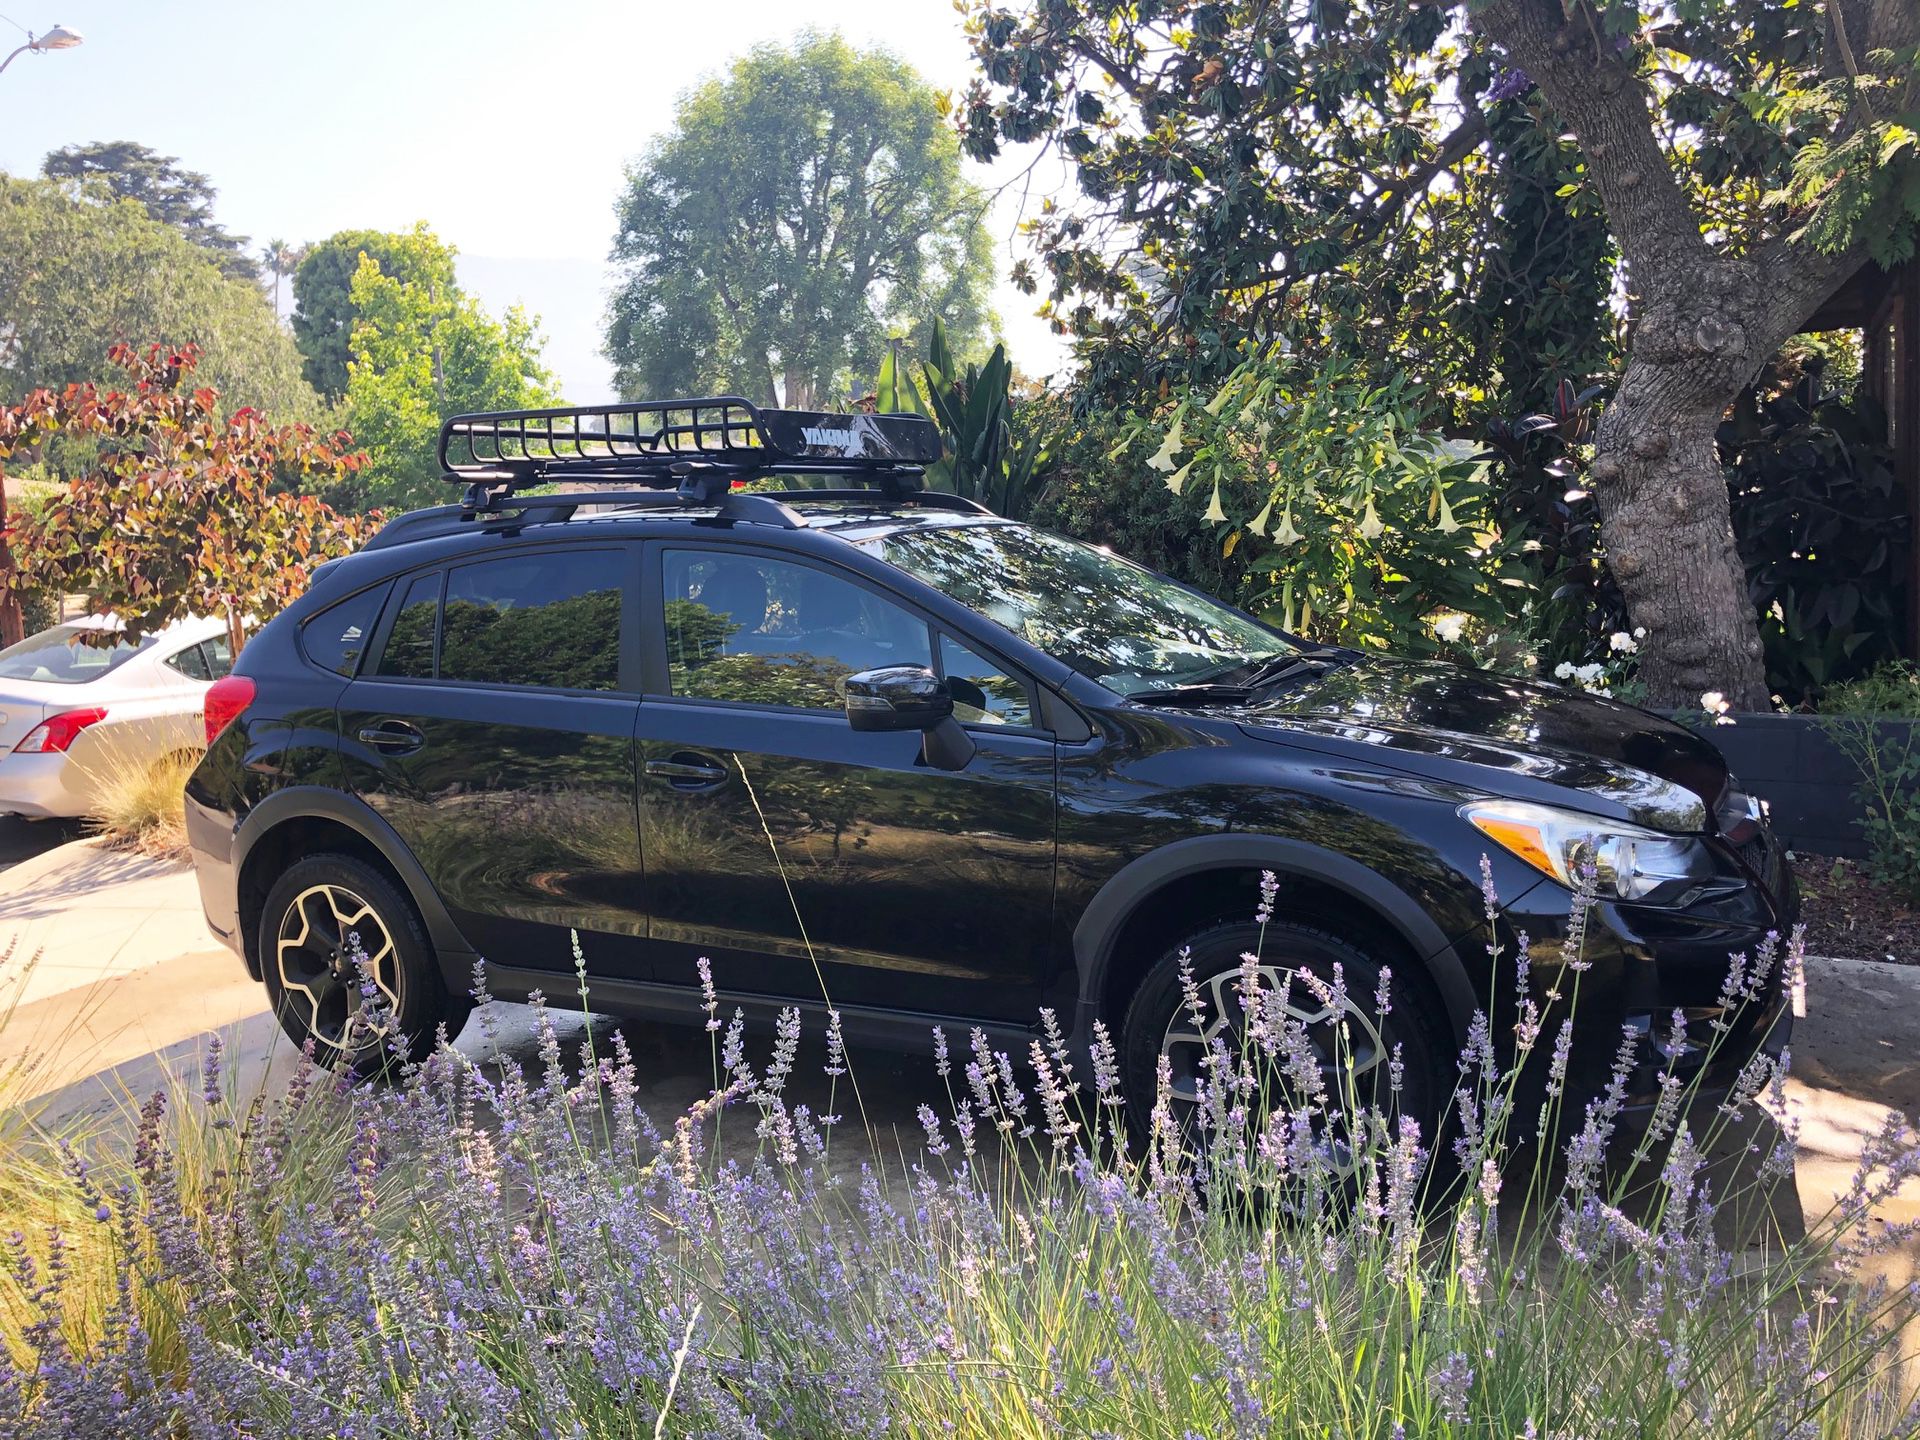 2015 Subaru XV Crosstrek